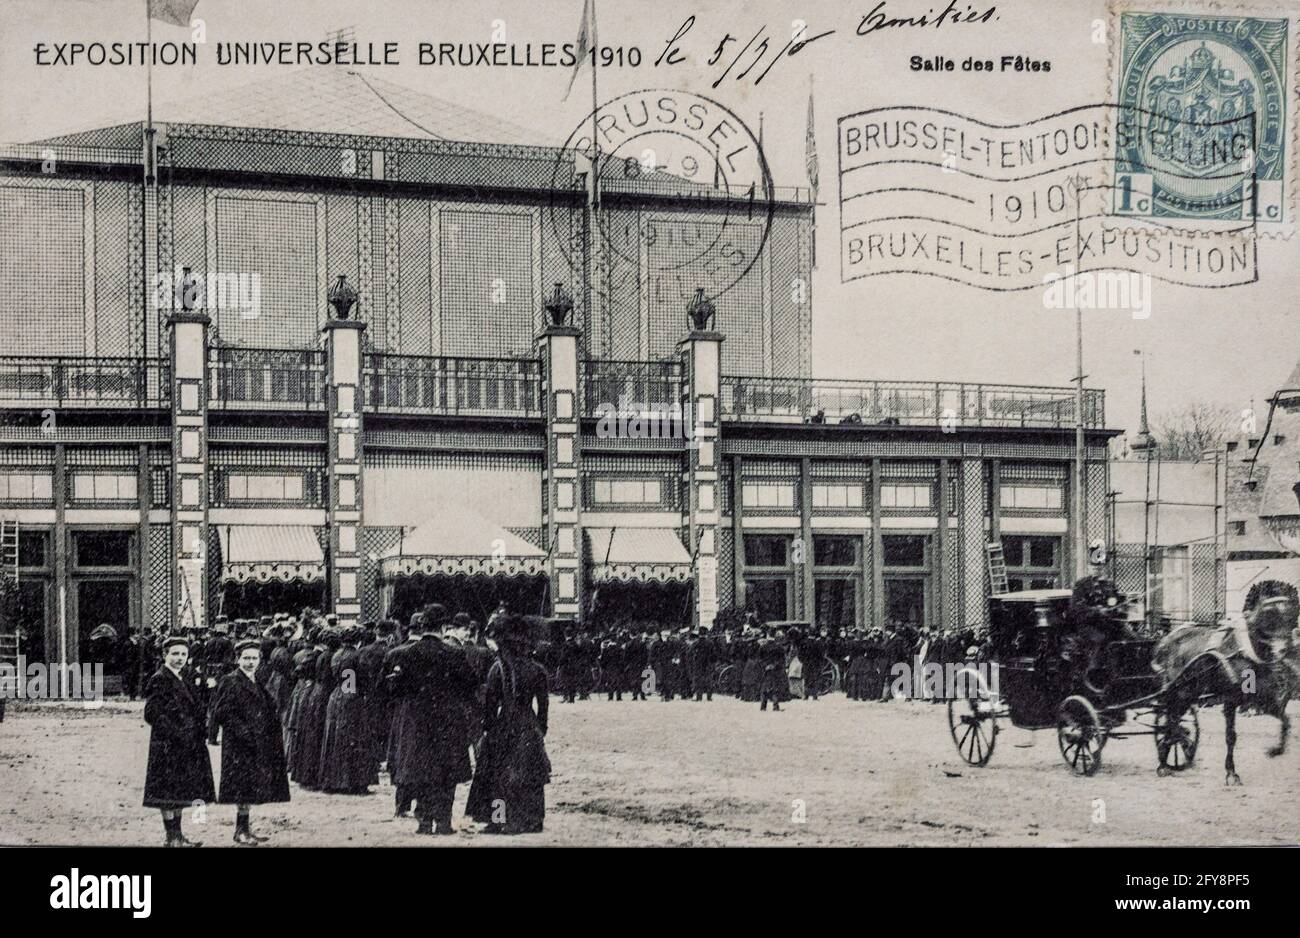 Cartolina belga che raffigura l'esposizione Universelle Bruxelles 1910 - Fiera universale di Bruxelles. Foto Stock